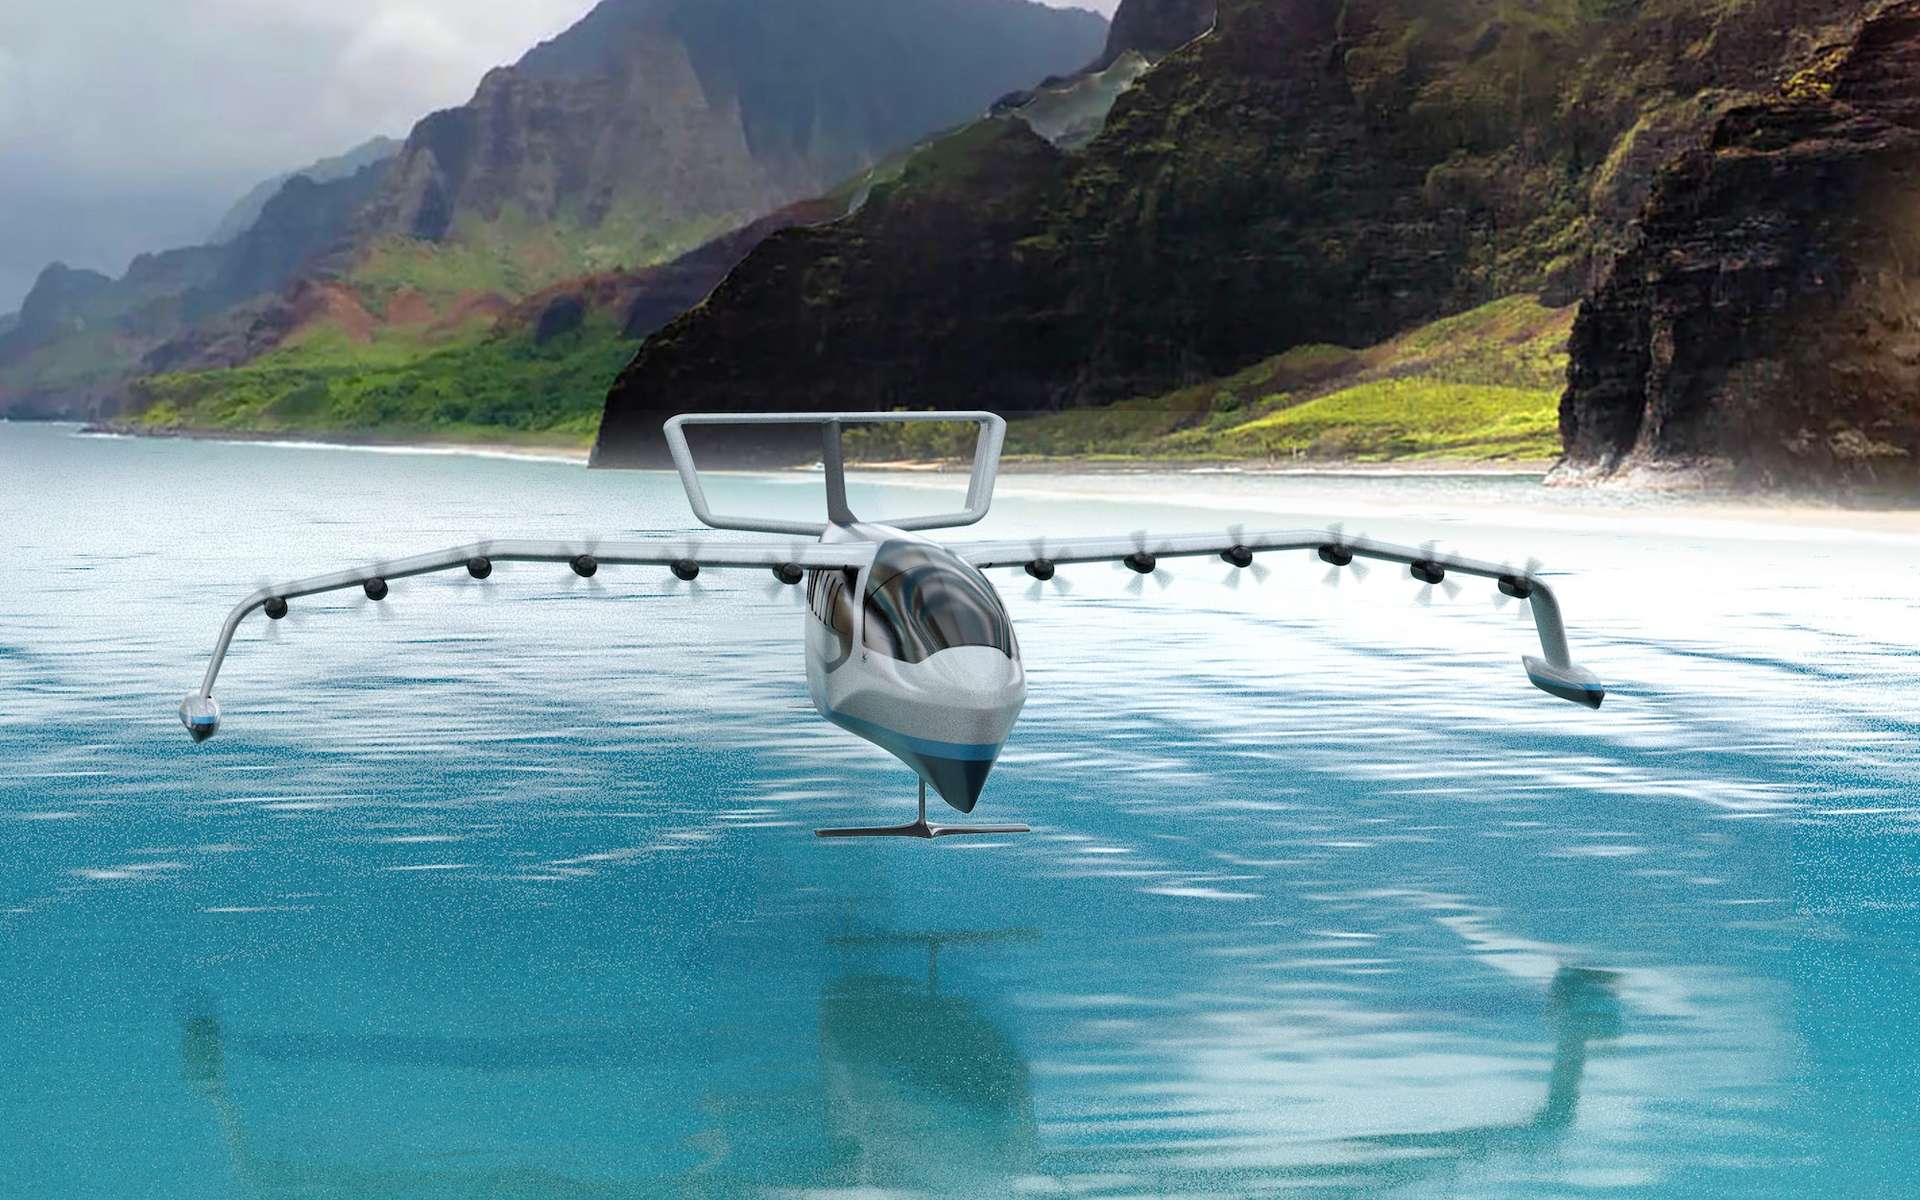 Le Seaglider, à la fois hydroptère et aéronef à effet de sol, va faire ses débuts à Hawaï